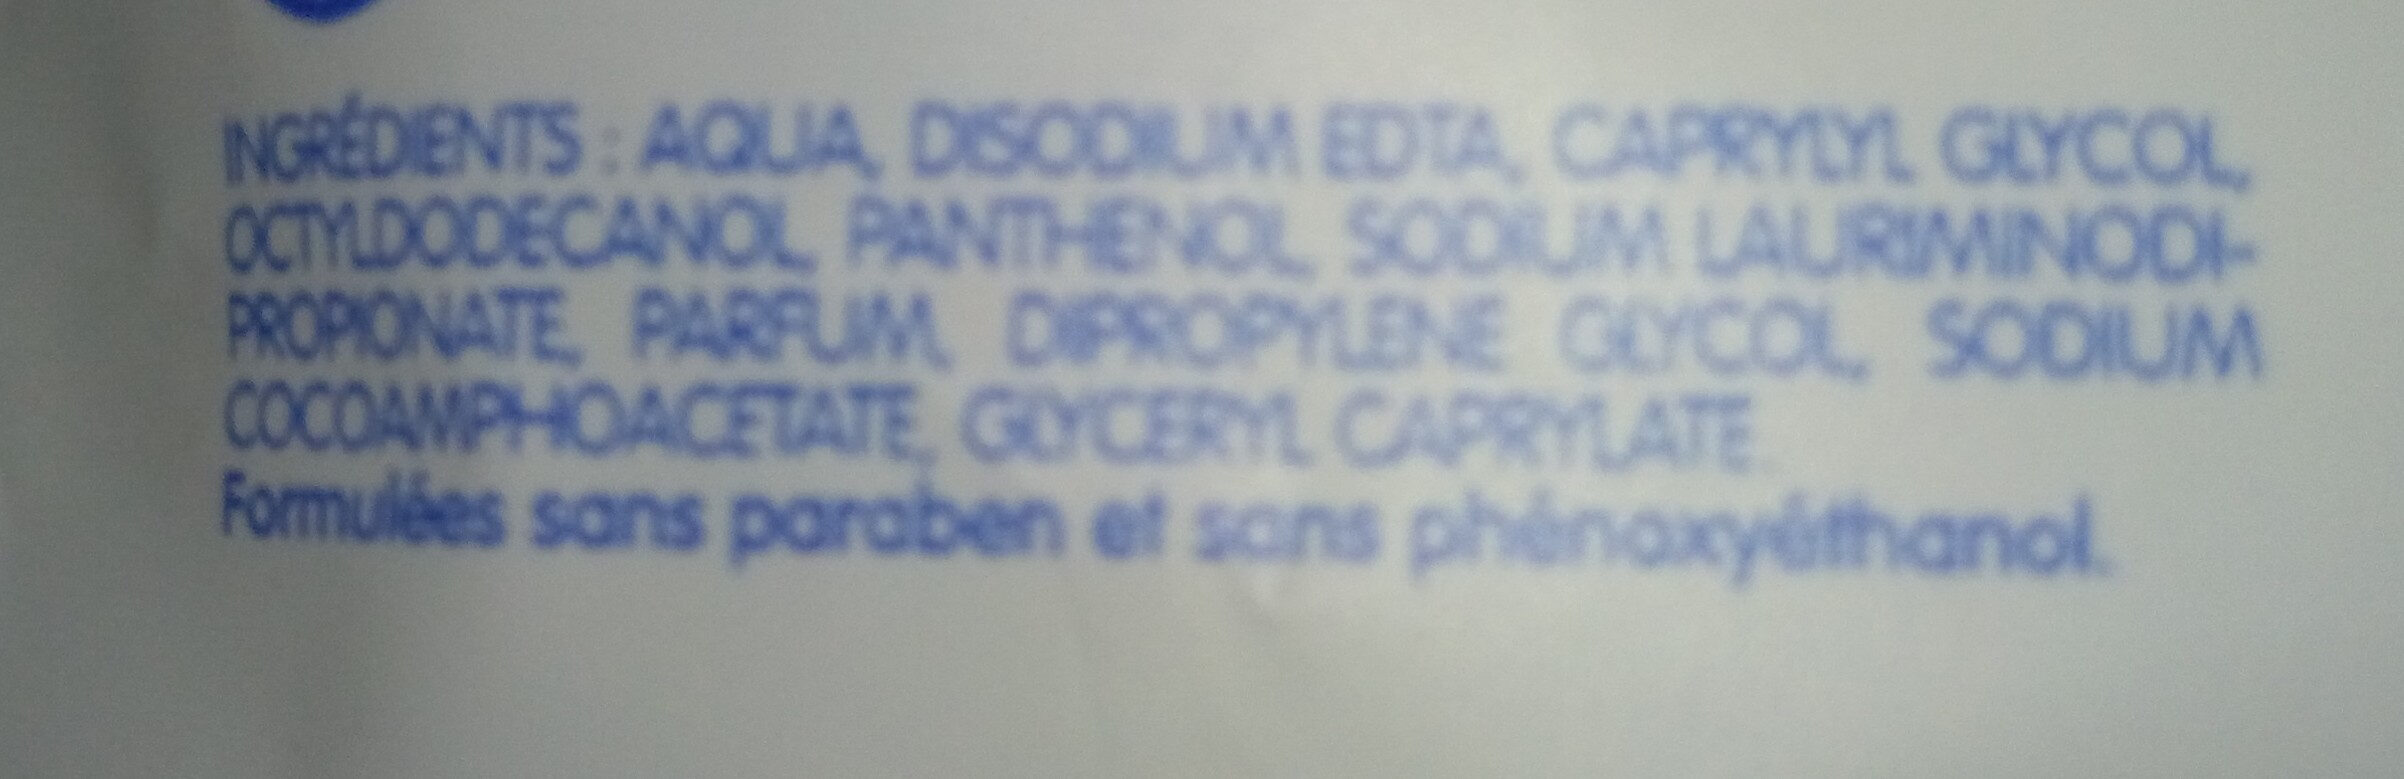 lingettes papier toilette - Ingredients - fr